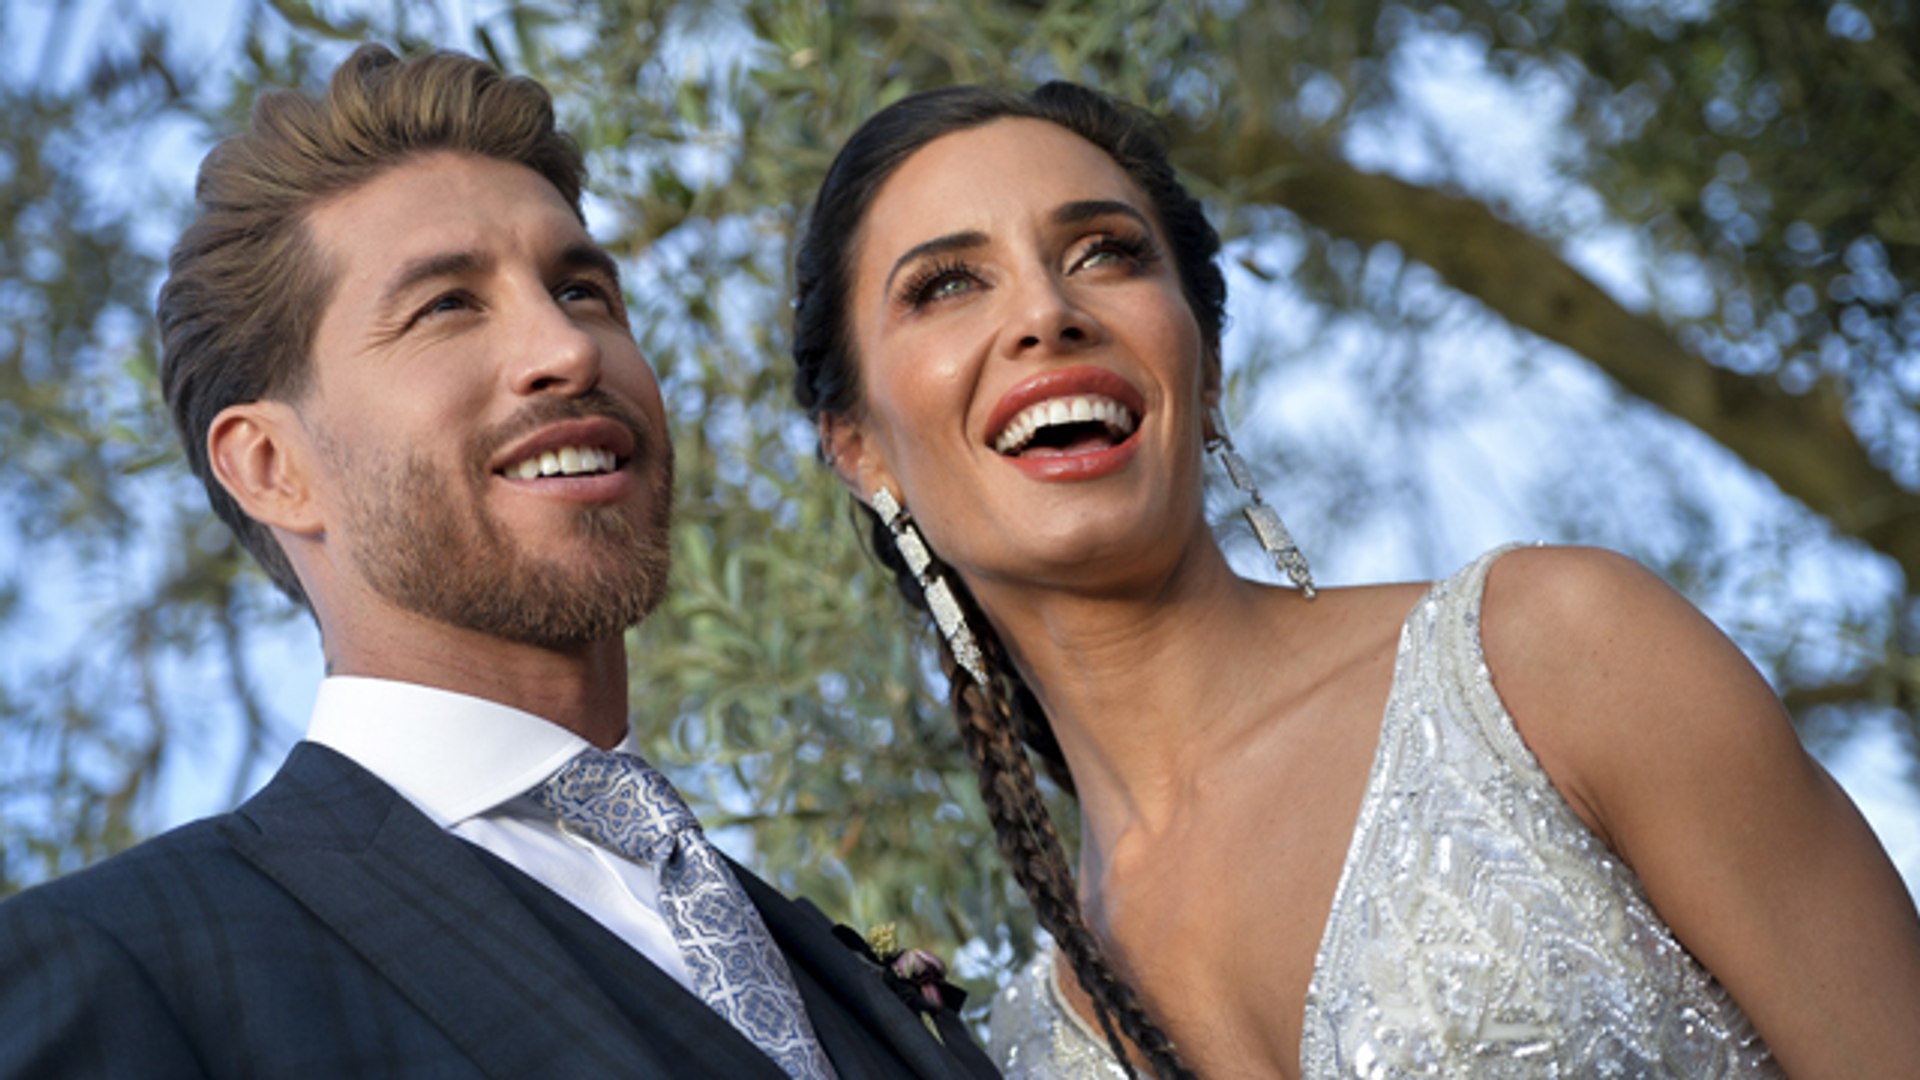 La boda de Sergio Ramos y Pilar Rubio - Vídeo Dailymotion